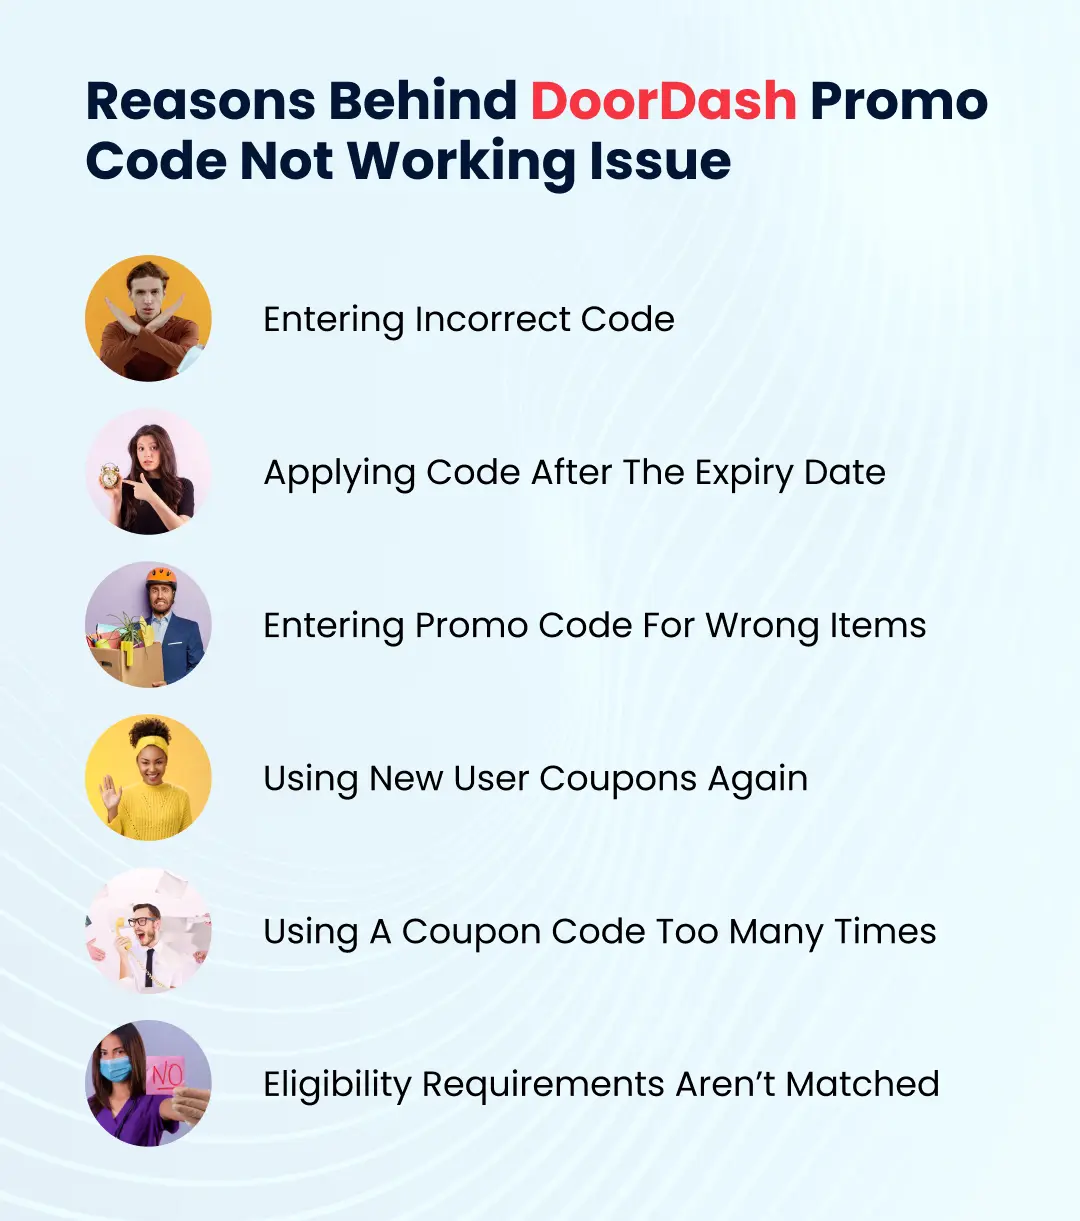 DoorDash Promo Code Not Working Issue